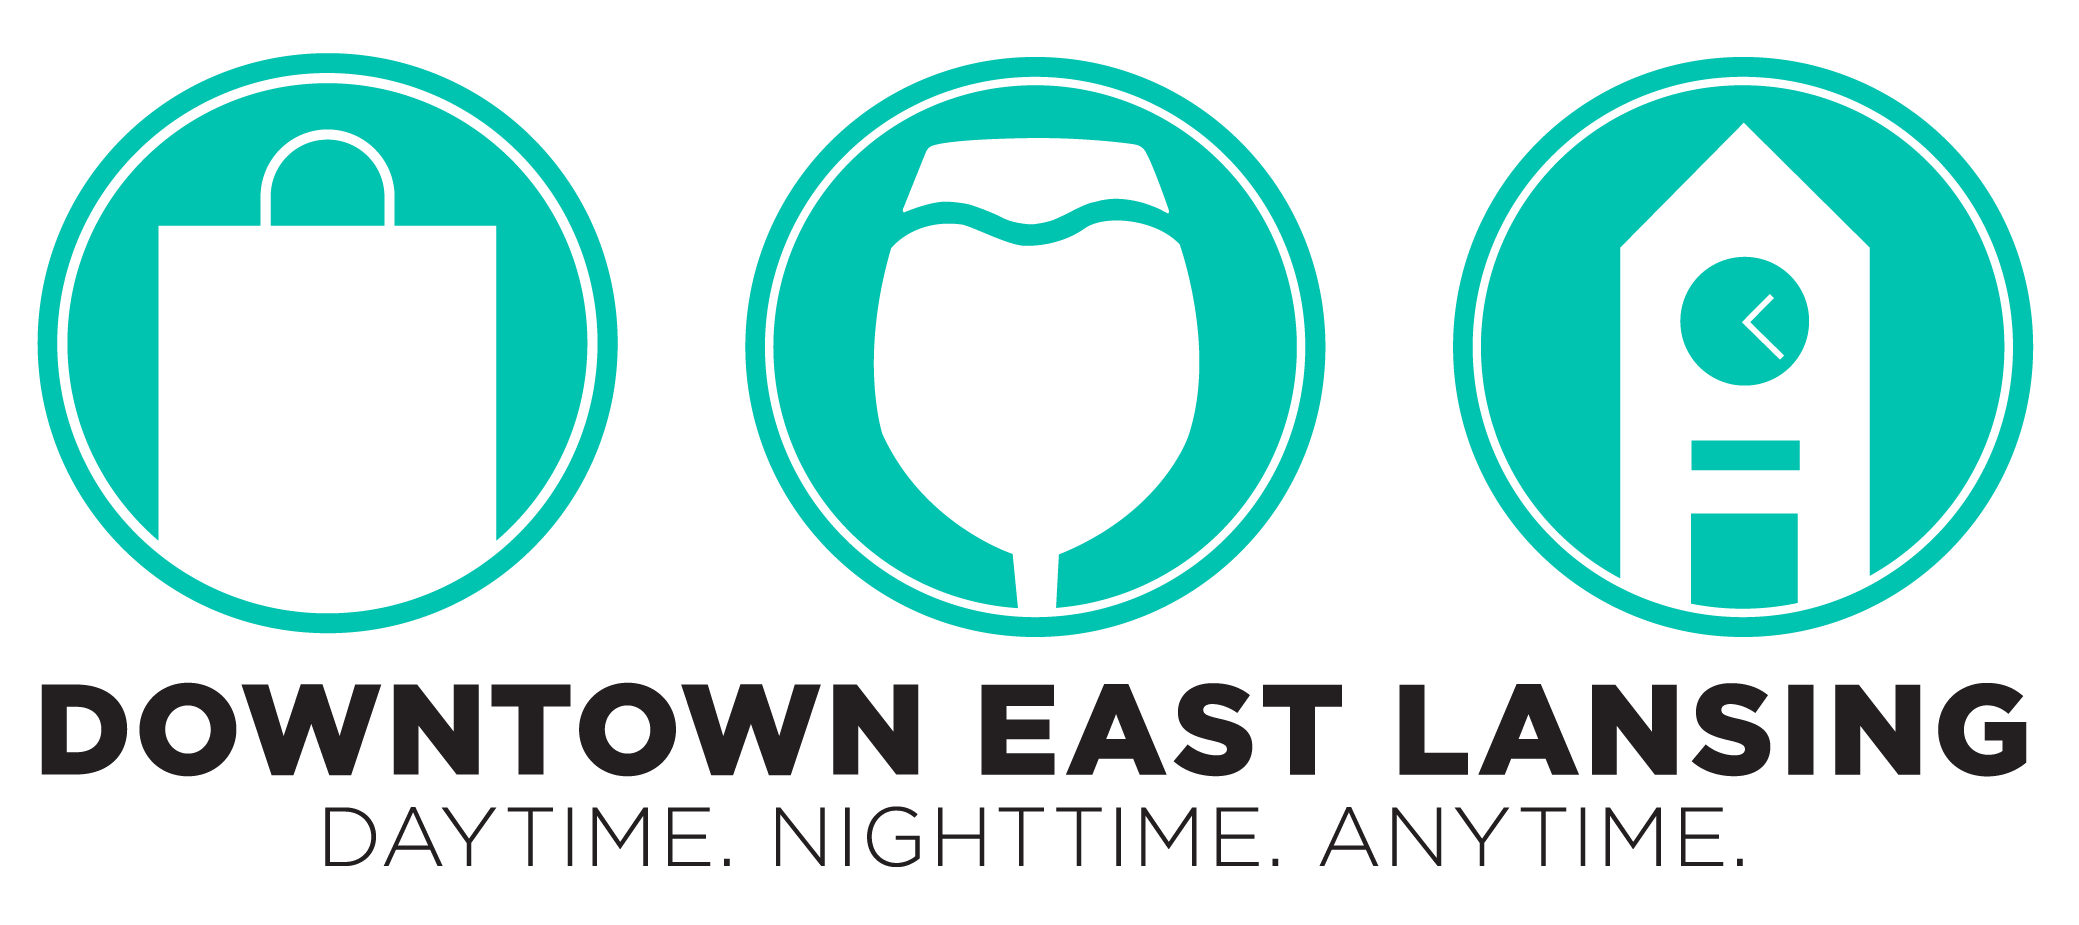 Downtown East Lansing eGift Card logo